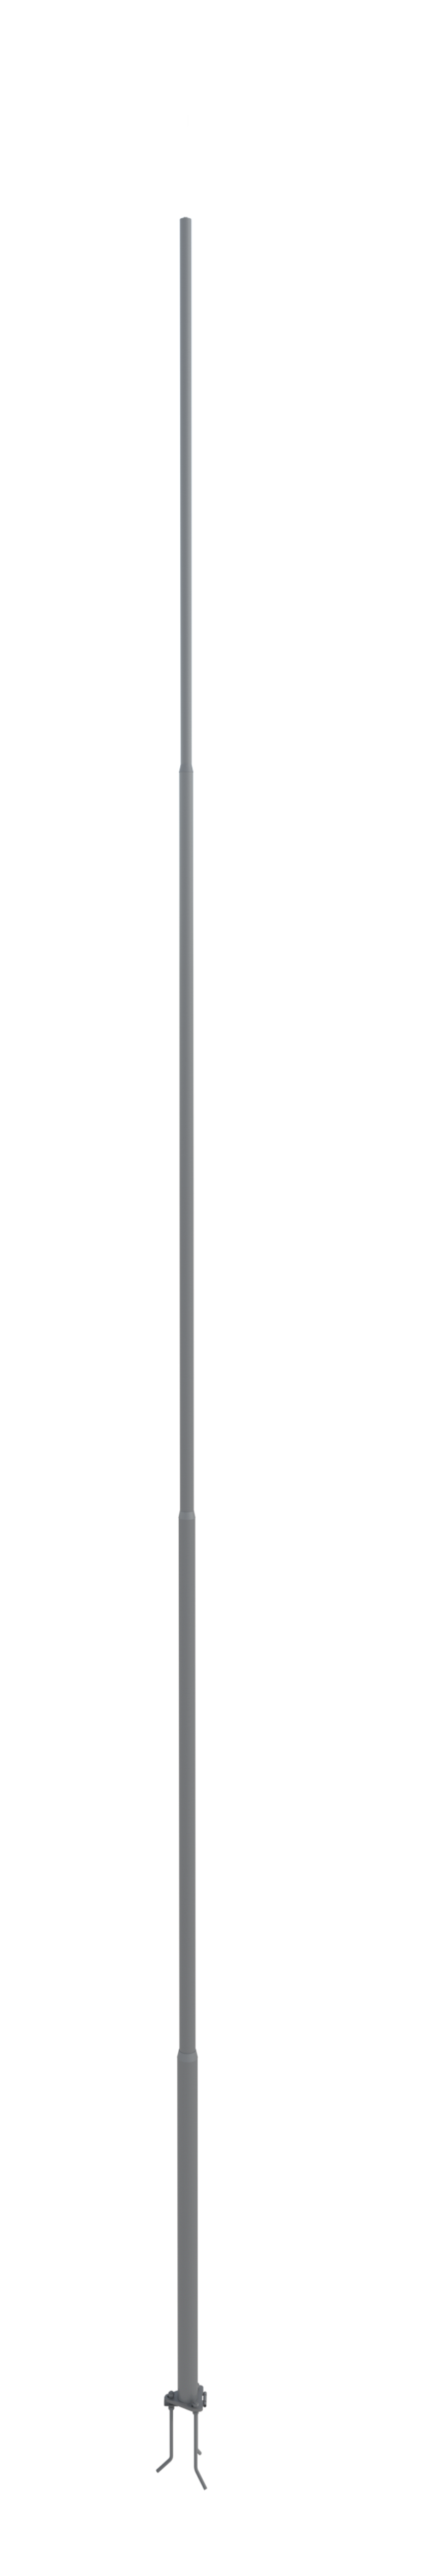 NordWerk МСАА-16 — Молниеотвод высотой 16 метров для активных молниеприемников (алюминий)